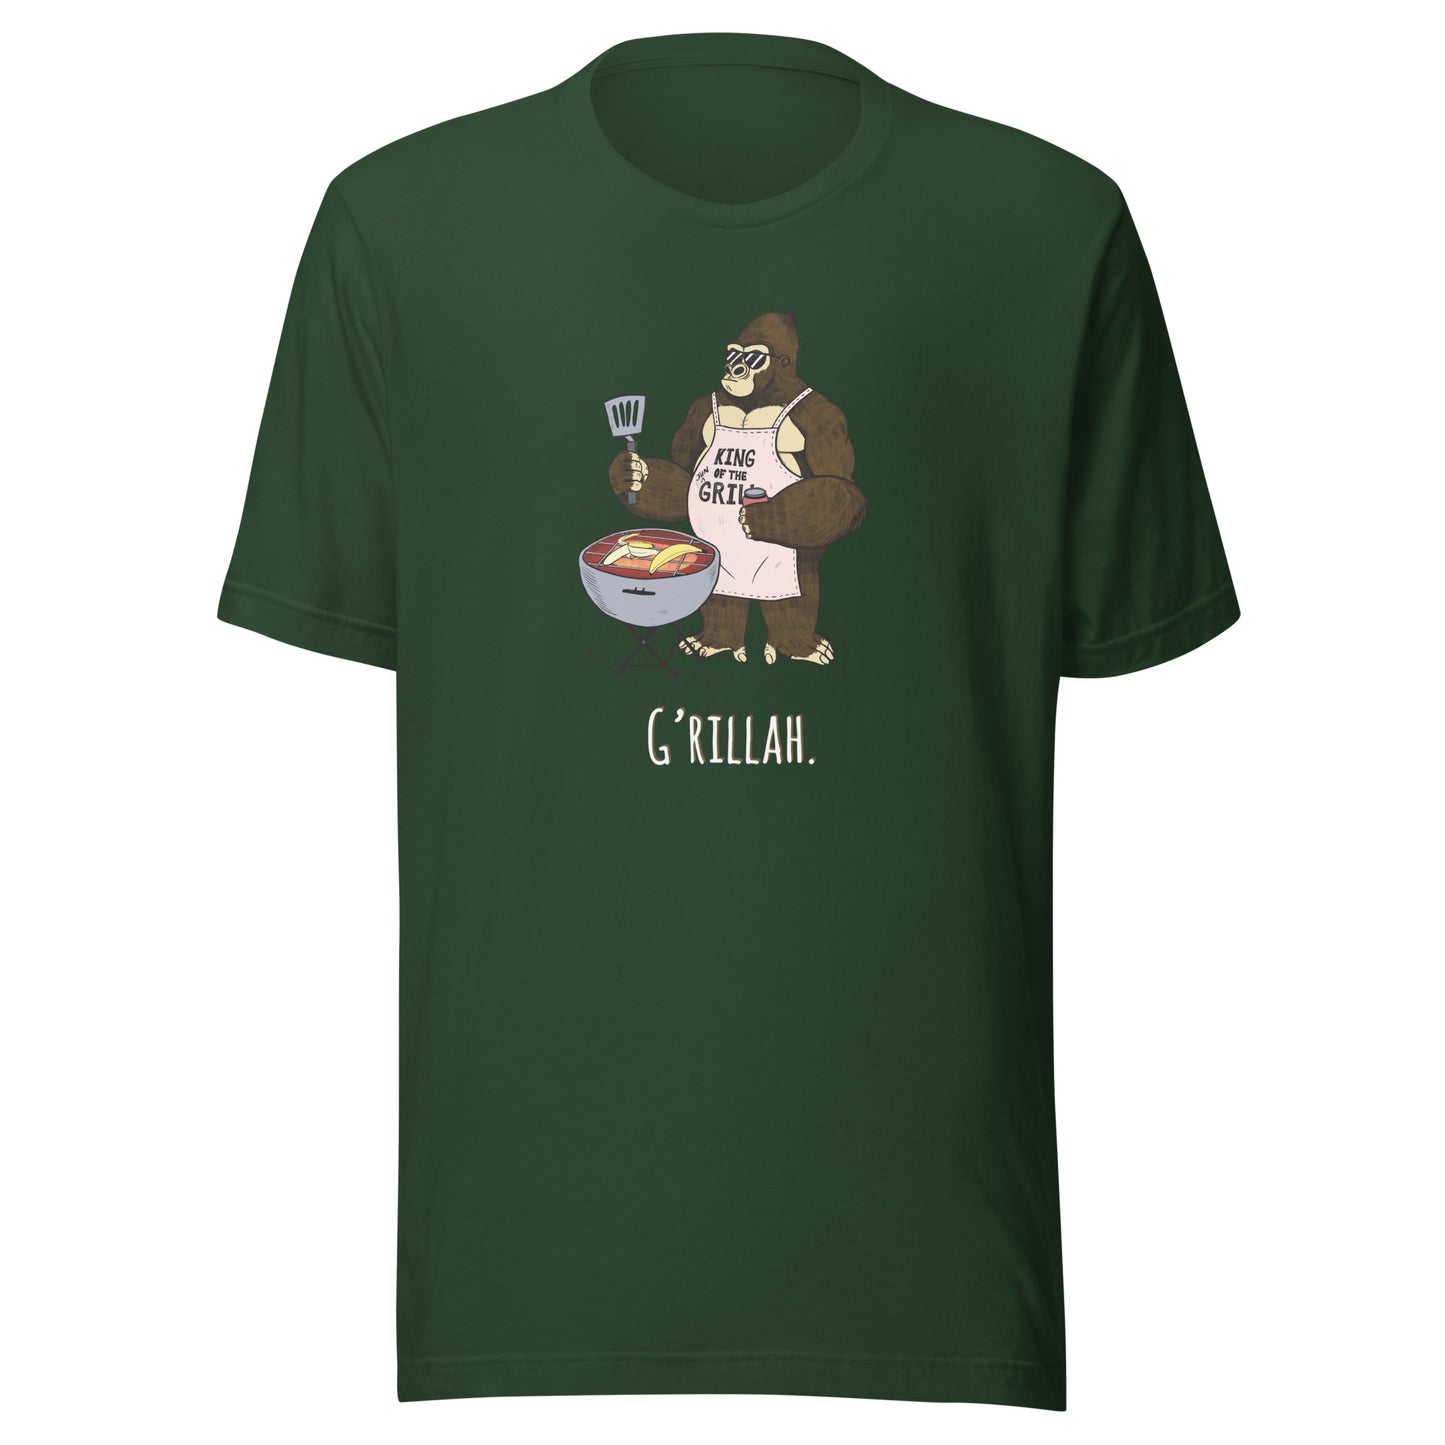 Griila Gorilla t-shirt